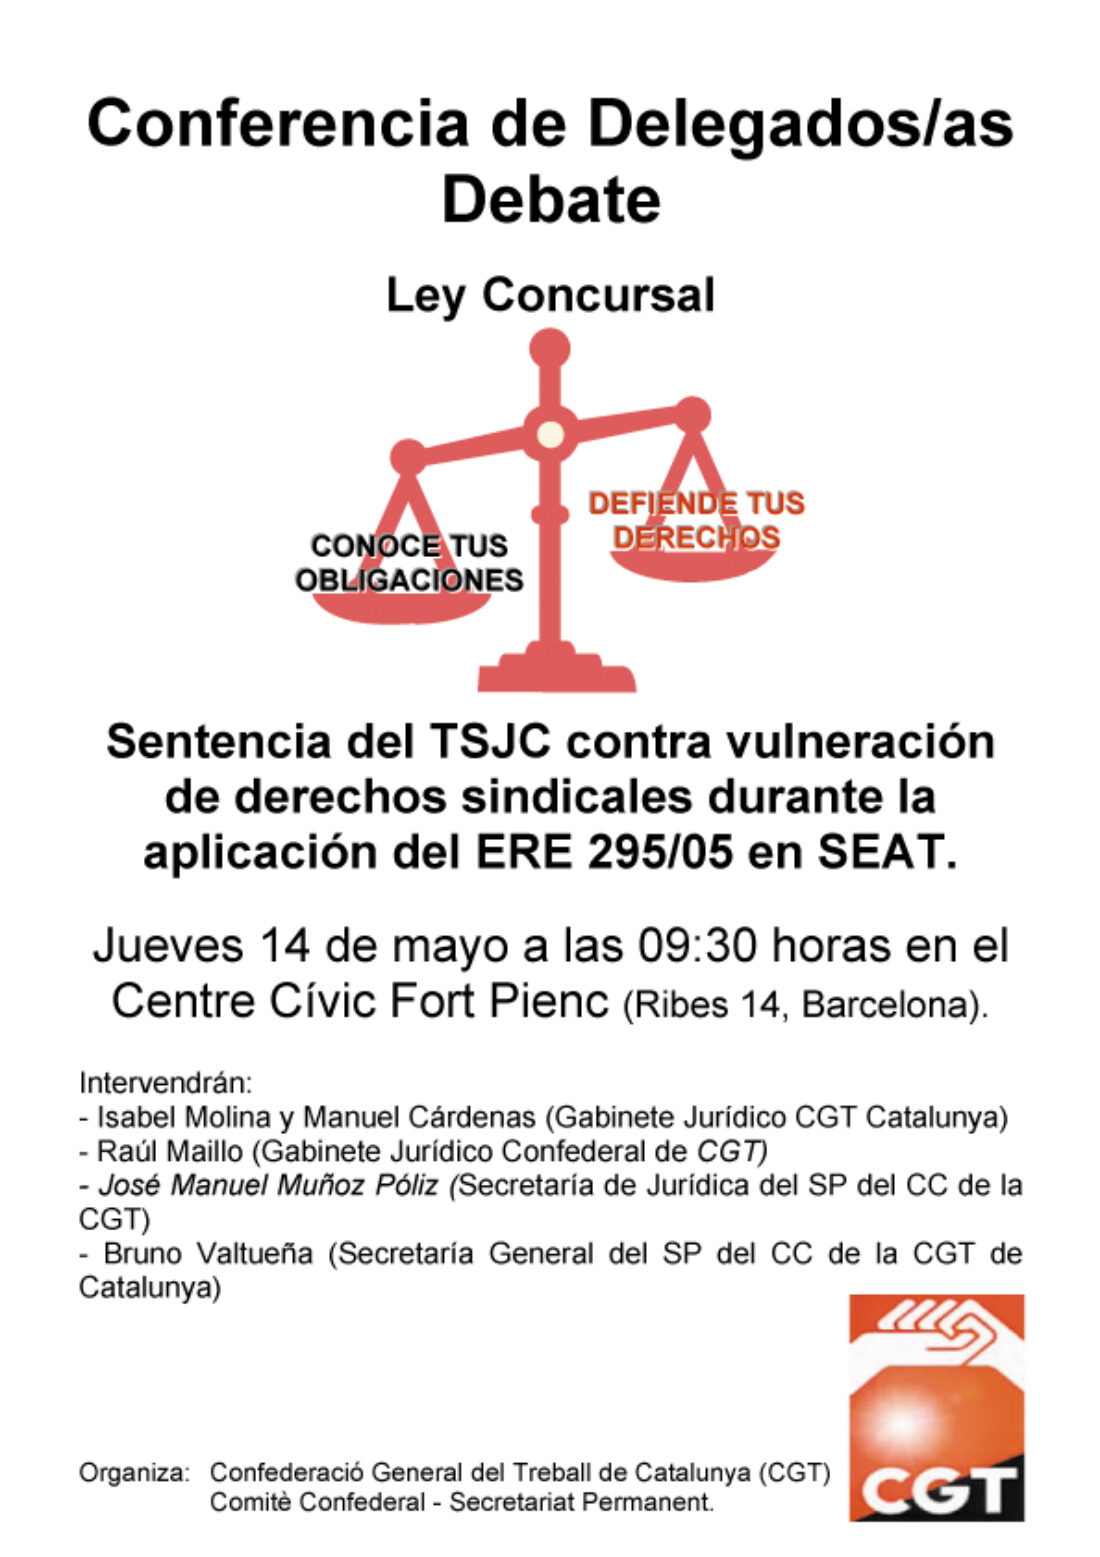 Conferència de delegats/des de la CGT de Catalunya sobre la Llei Concursal i la Sentència del TSJC contra SEAT per vulneració de drets sindicals